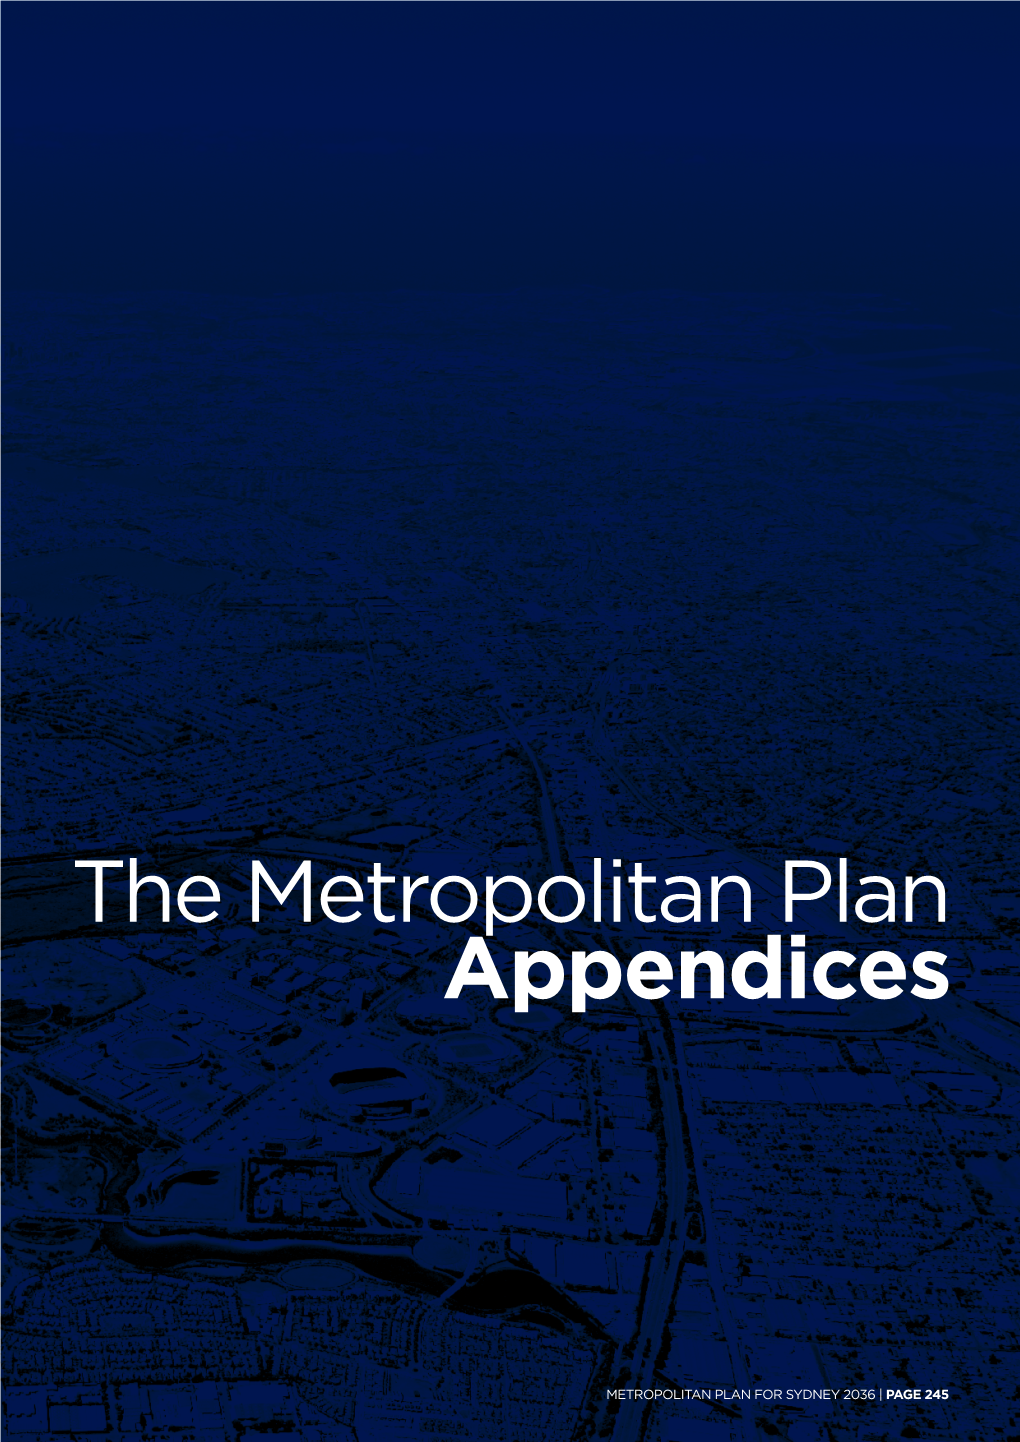 The Metropolitan Plan Appendices